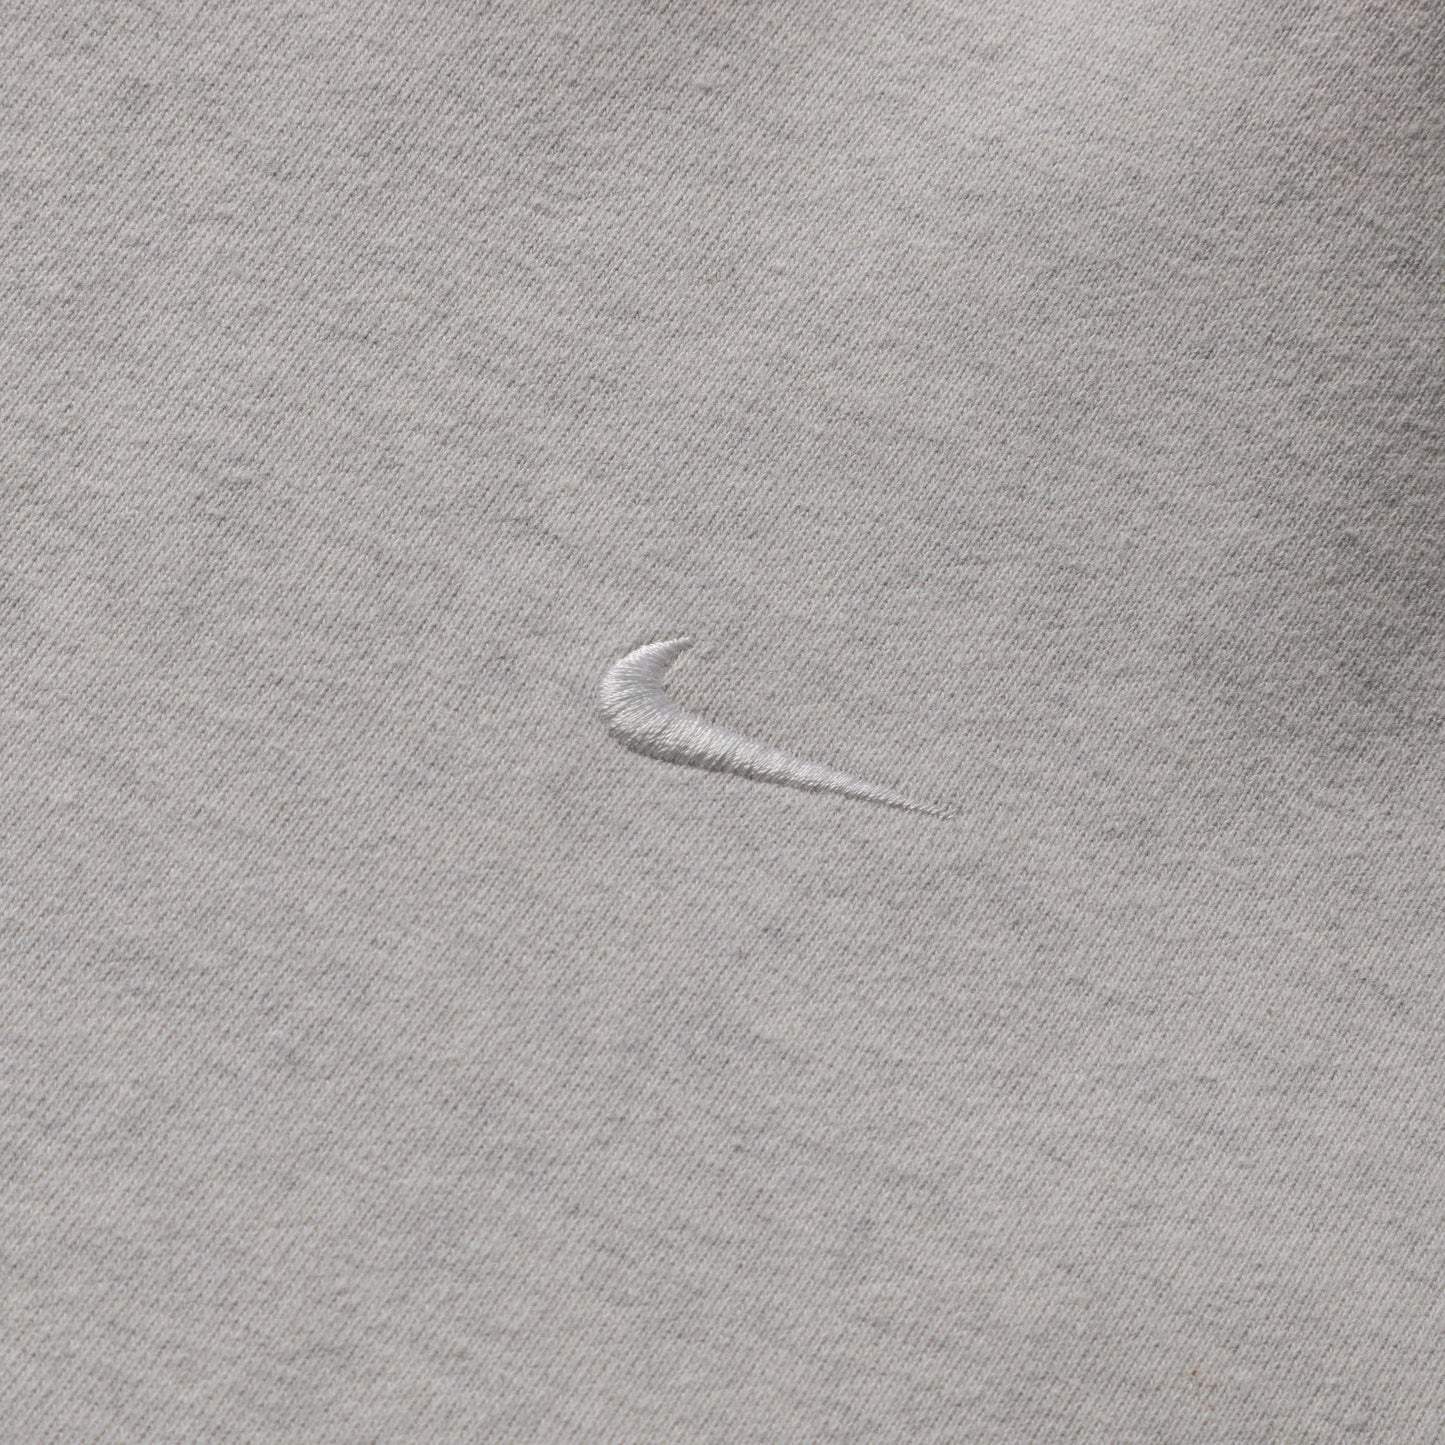 Nike Hoodies & Sweatshirts PACKABLE AFTERHOOD